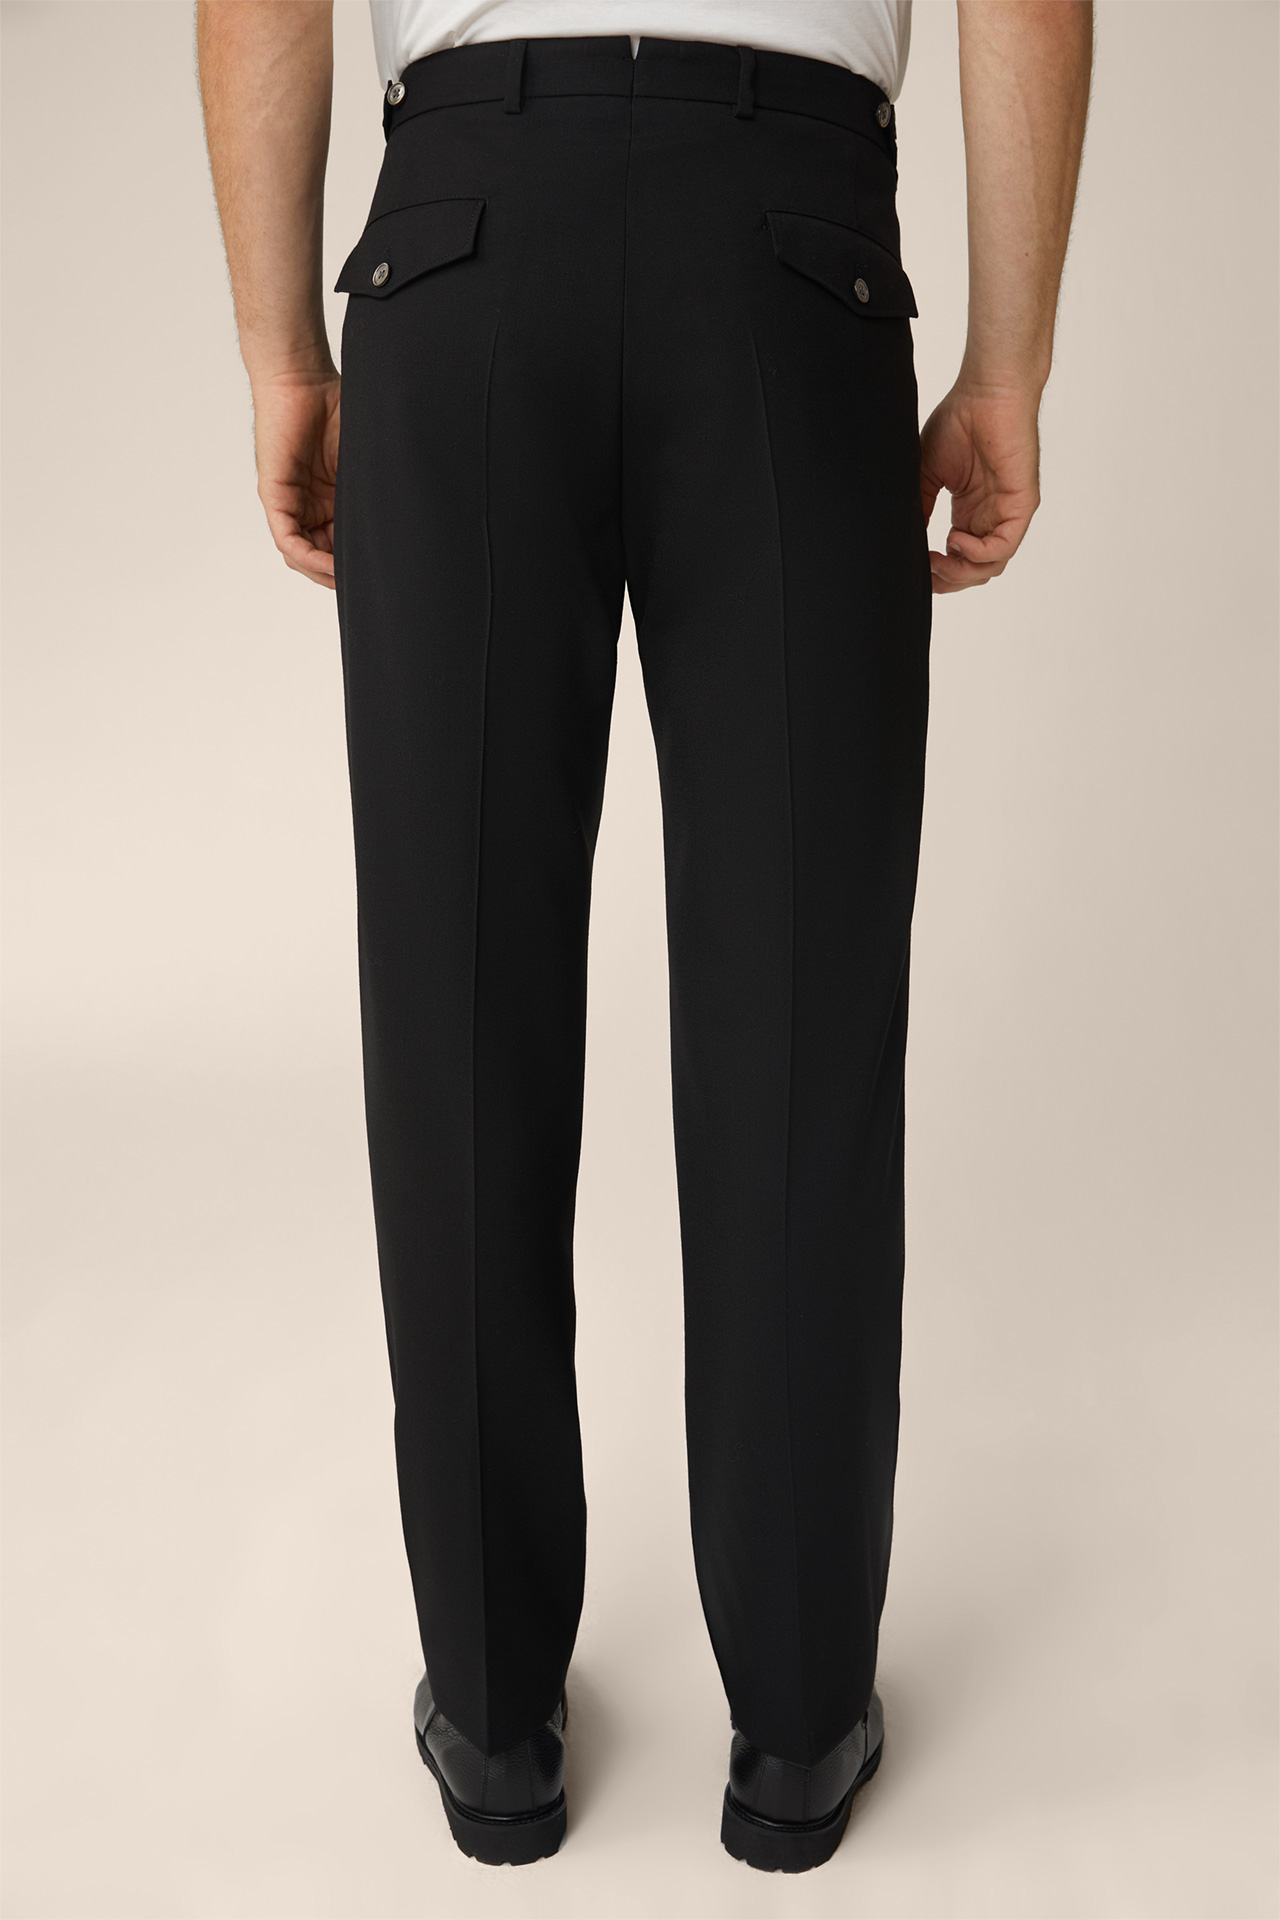 Pantalon modulaire en laine vierge Frero avec pinces à la taille, de couleur noire